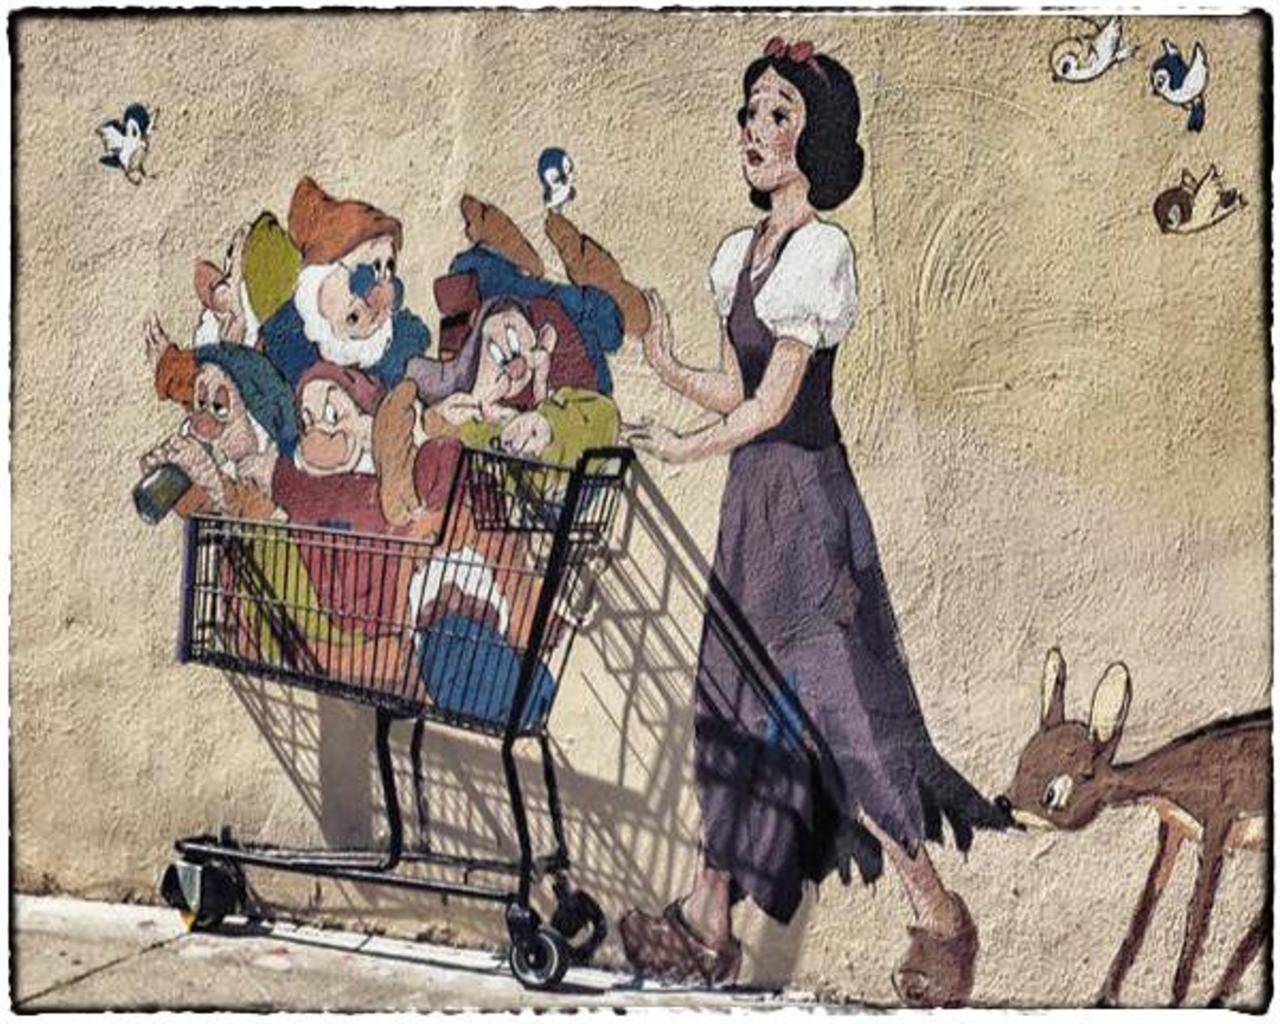 #SnowWhite & her Dwarfs in a basket in #LosAngeles .. #StreetArt #Graffiti #Art .. http://t.co/D6Kd8FMHm4